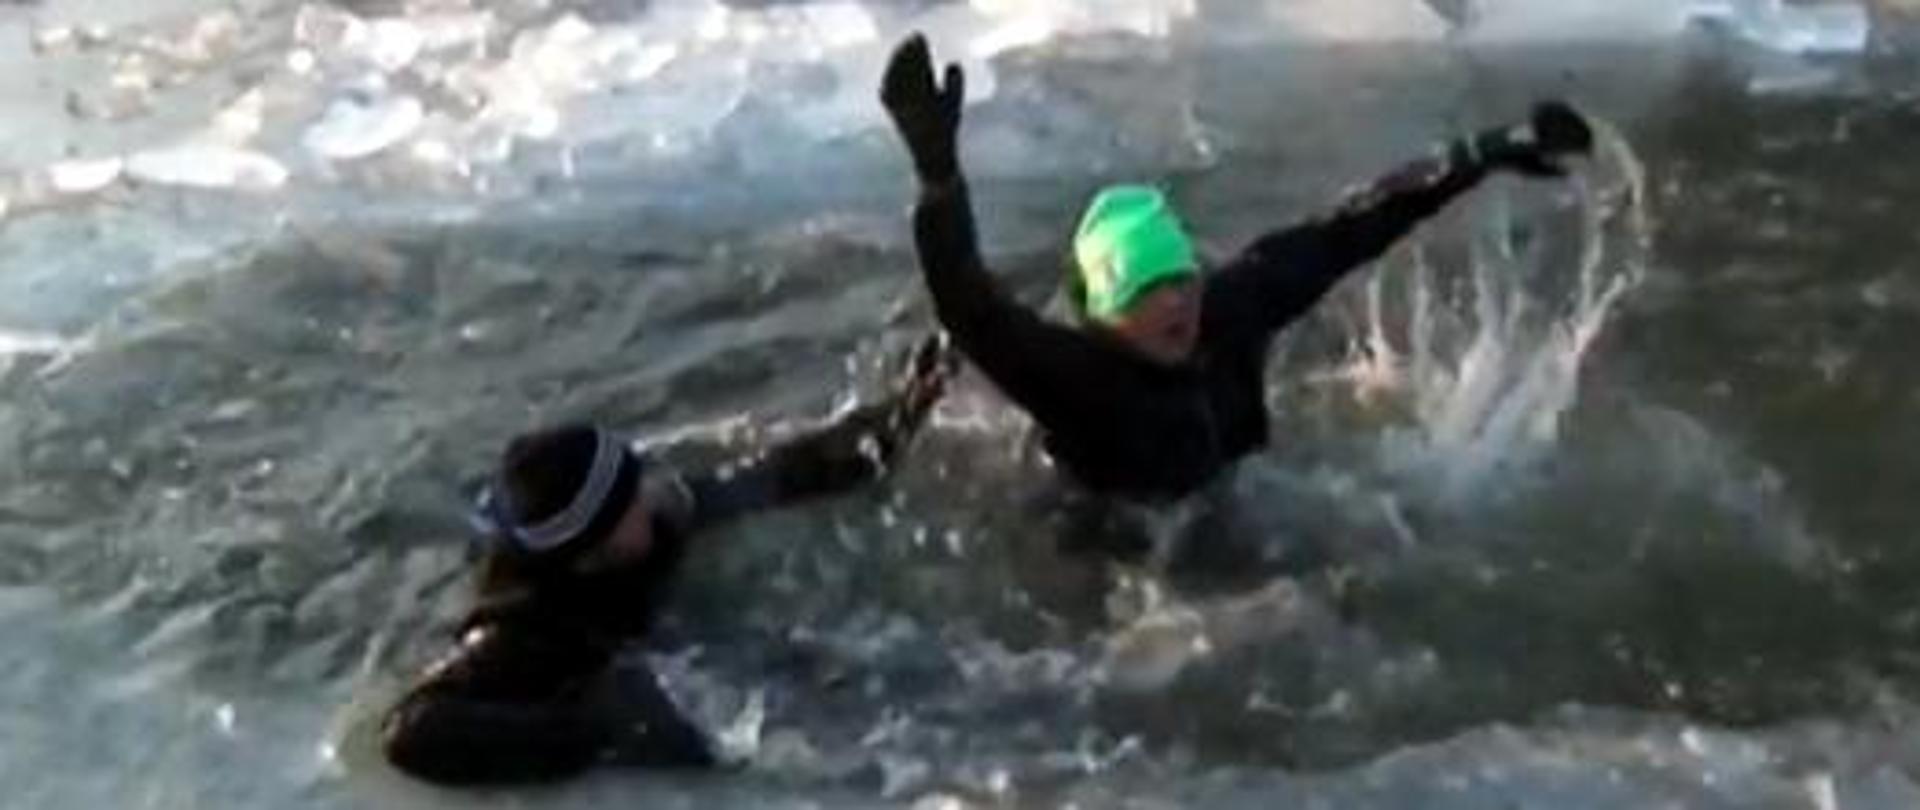 Dwóch ludzi tonie w wodzie po tym jak załamał się lód. Wymahują, rękami wzywając pomocy. Oboje ubrani na czarno. Jeden z mężczyzn ma zieloną czapkę. 